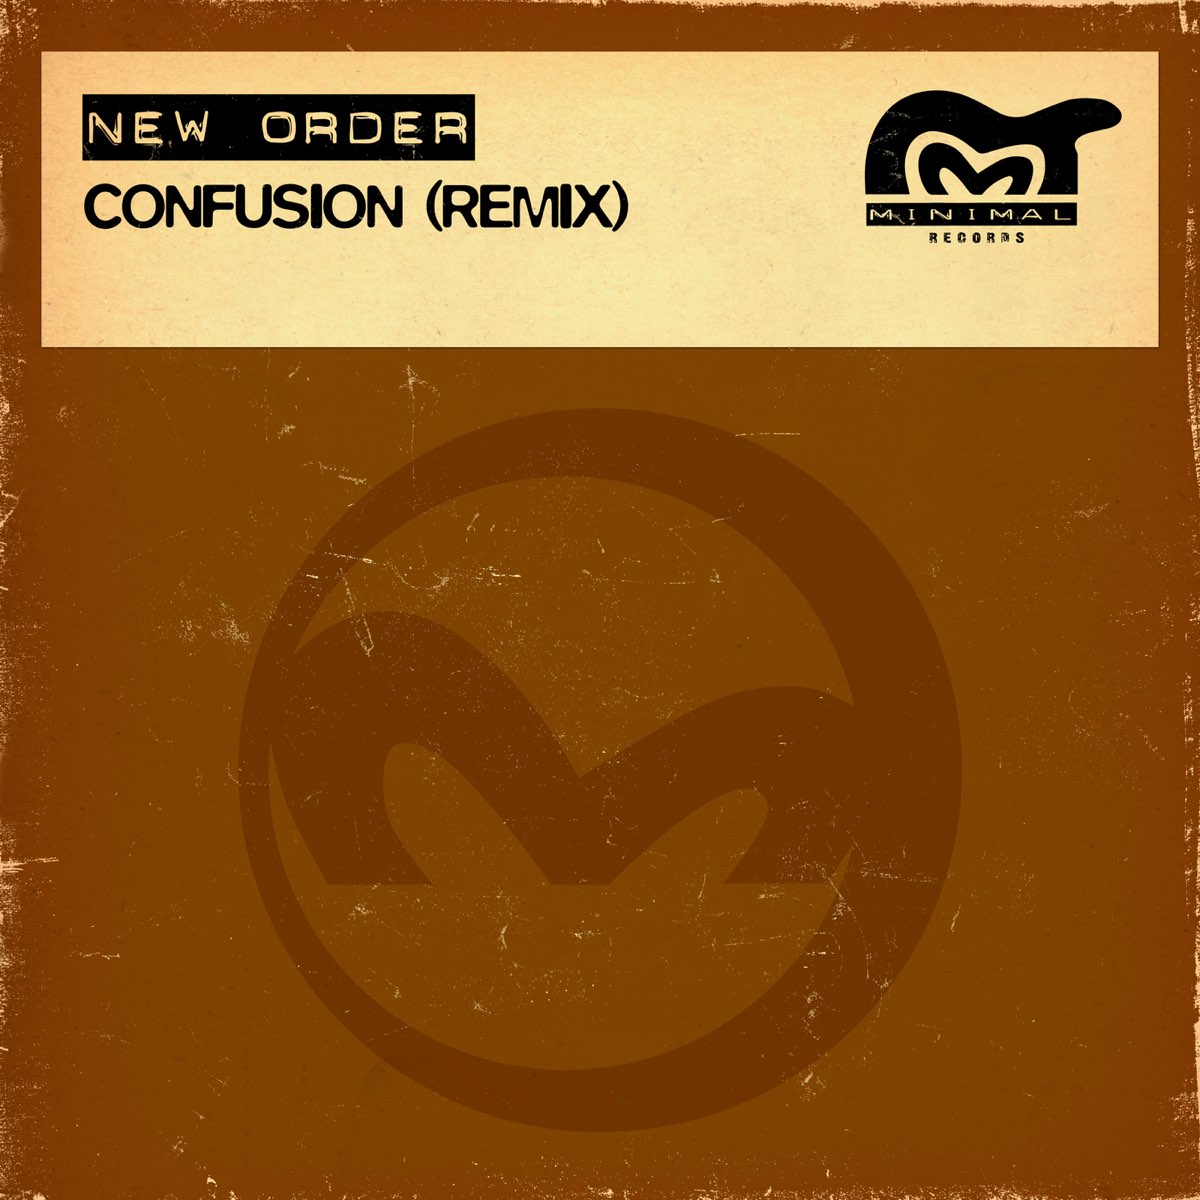 New order confusion. New order confusion 1995. New order confusion Remix Blade. LP New order: confusion.